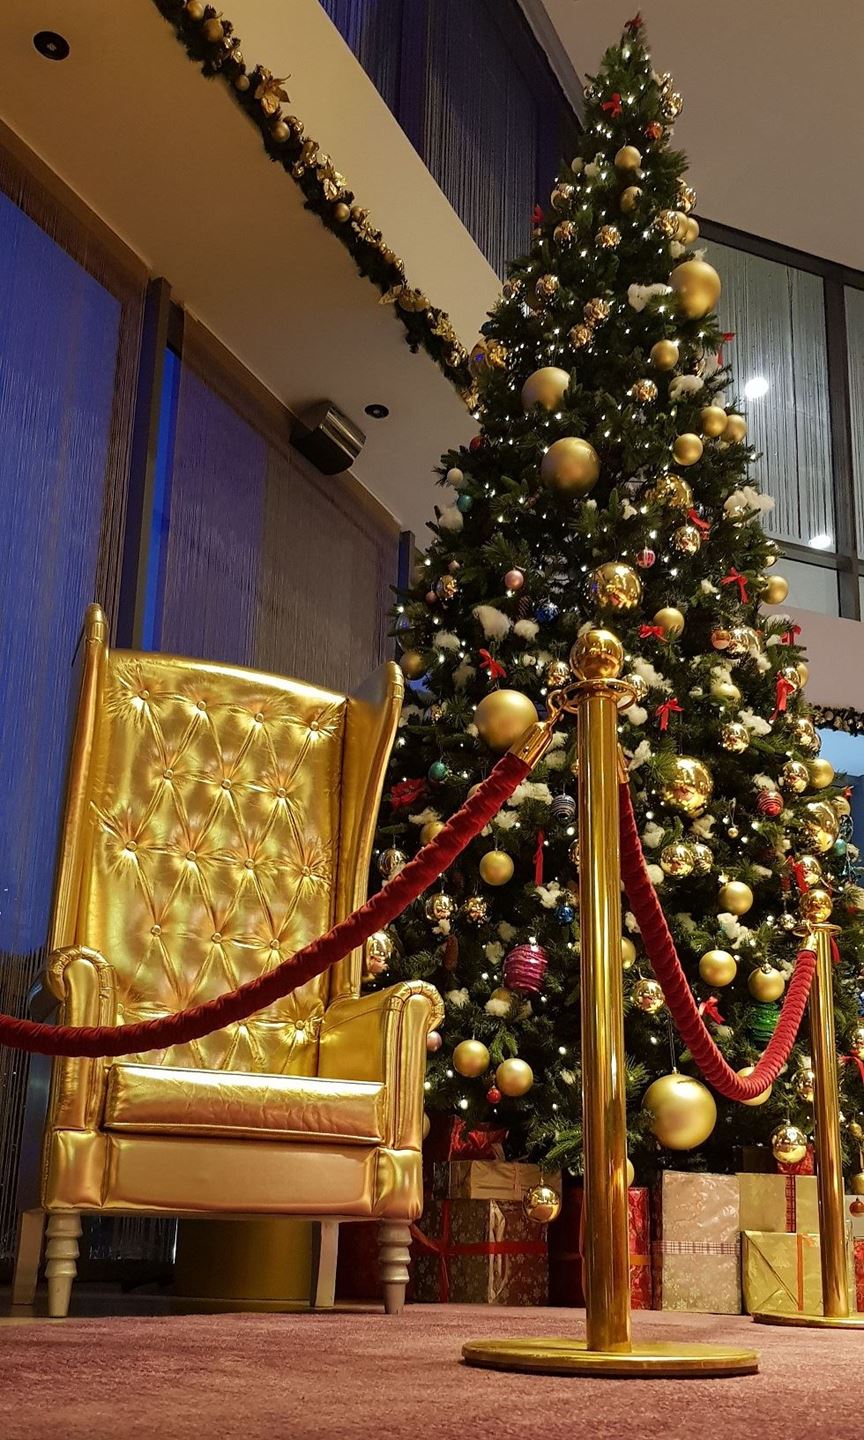 فندق سيمفوني ستايل الكويت يعلن عن انطلاق موسم الاحتفالات مع إضاءة شجرة العيد